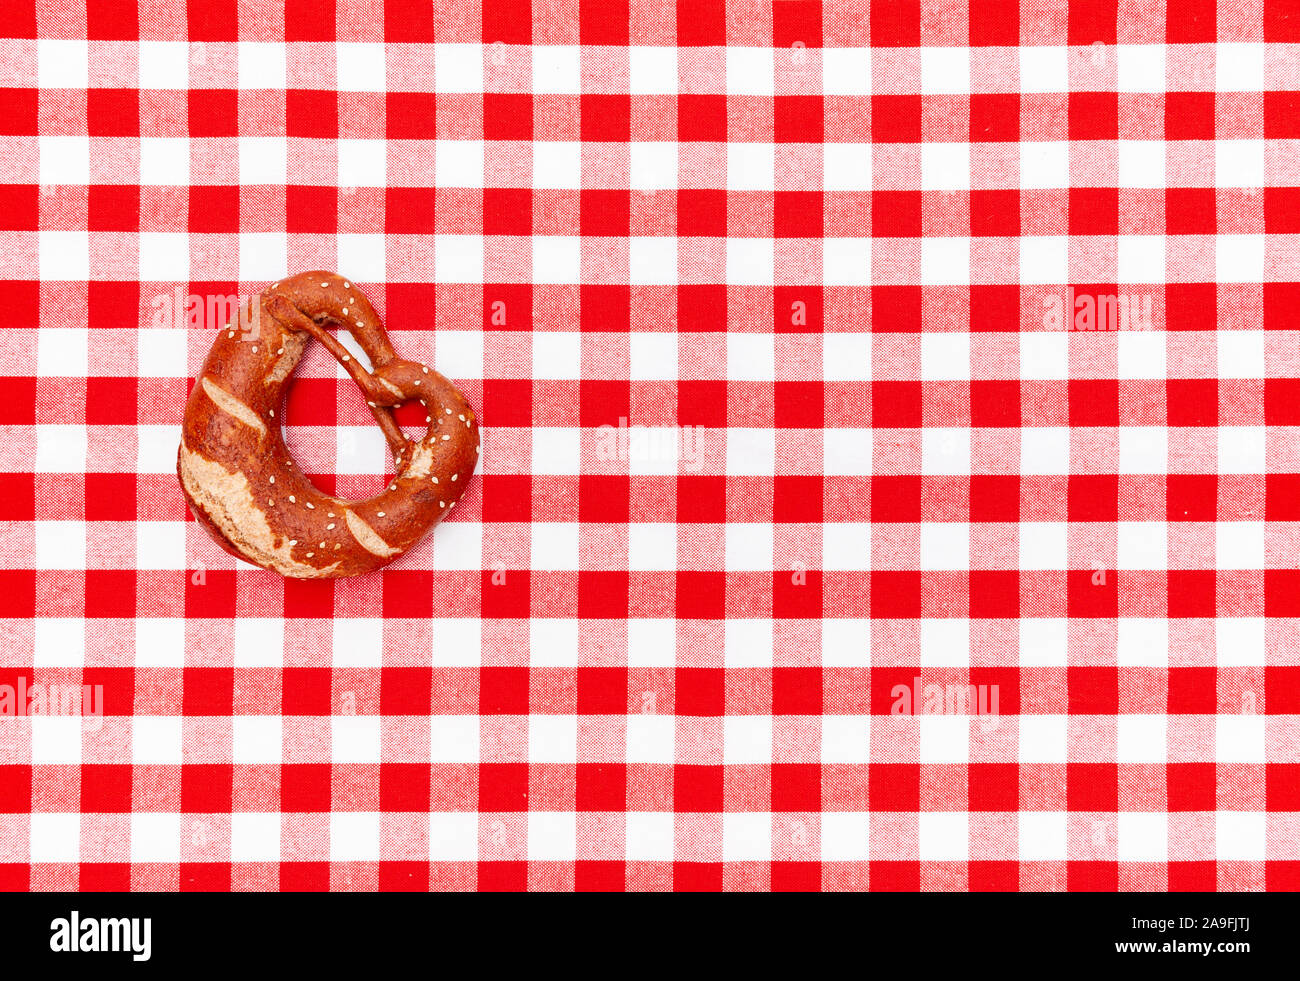 Manteles a cuadros rojos y blancos con el pretzel Foto de stock